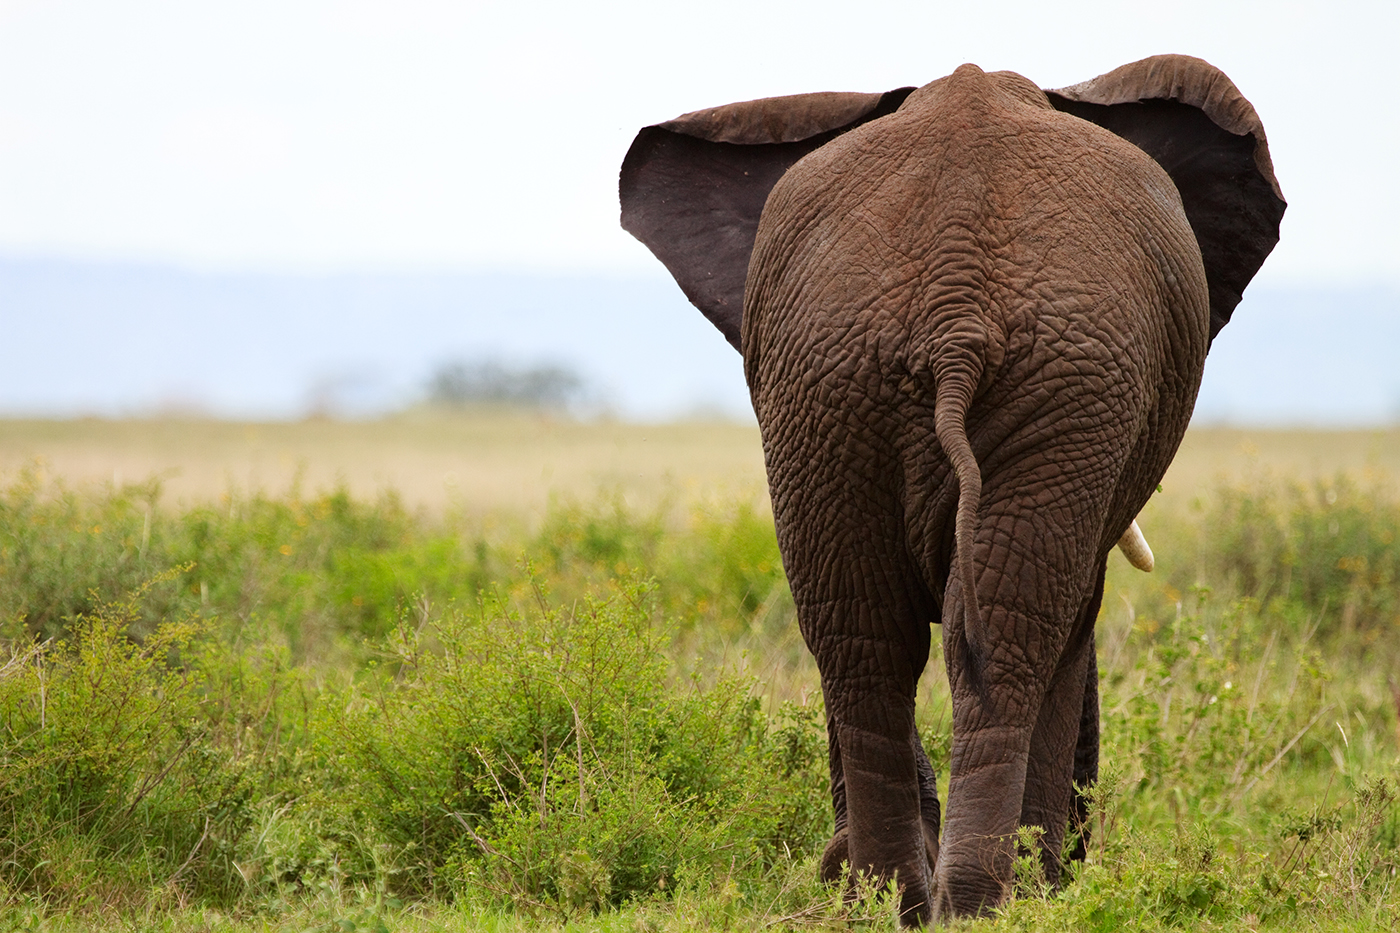 Elephant in Tarangire national park, Tanzania